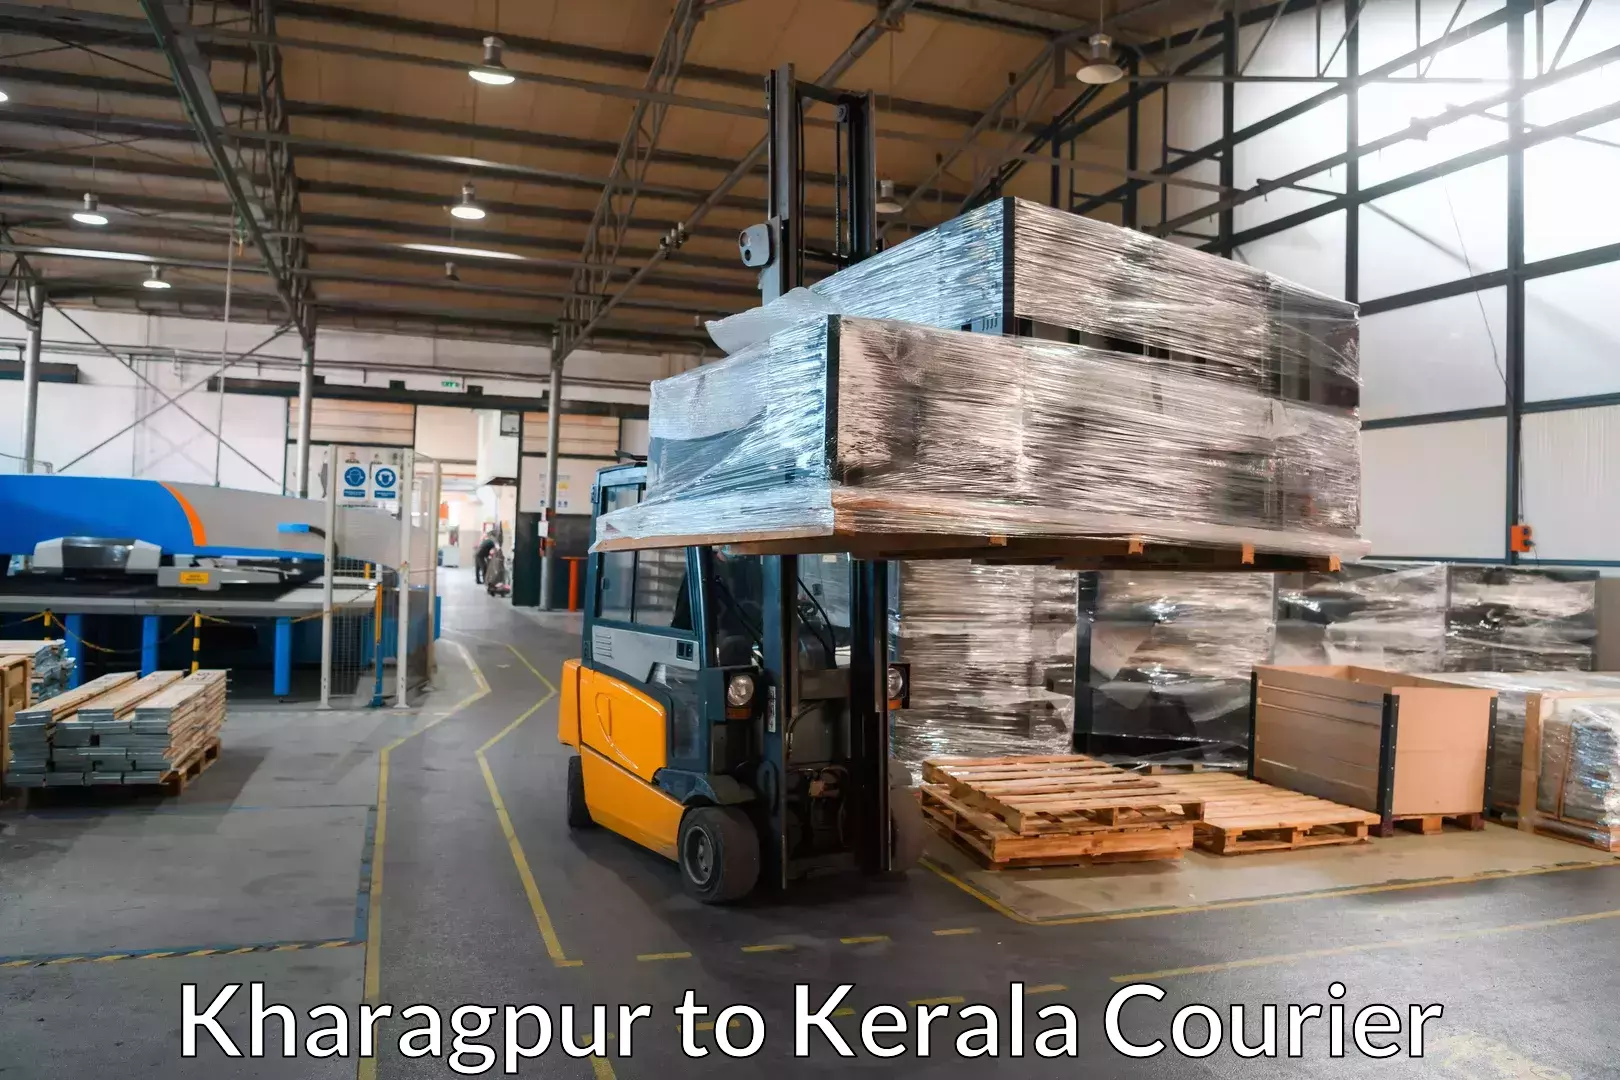 Efficient moving company Kharagpur to Kottayam